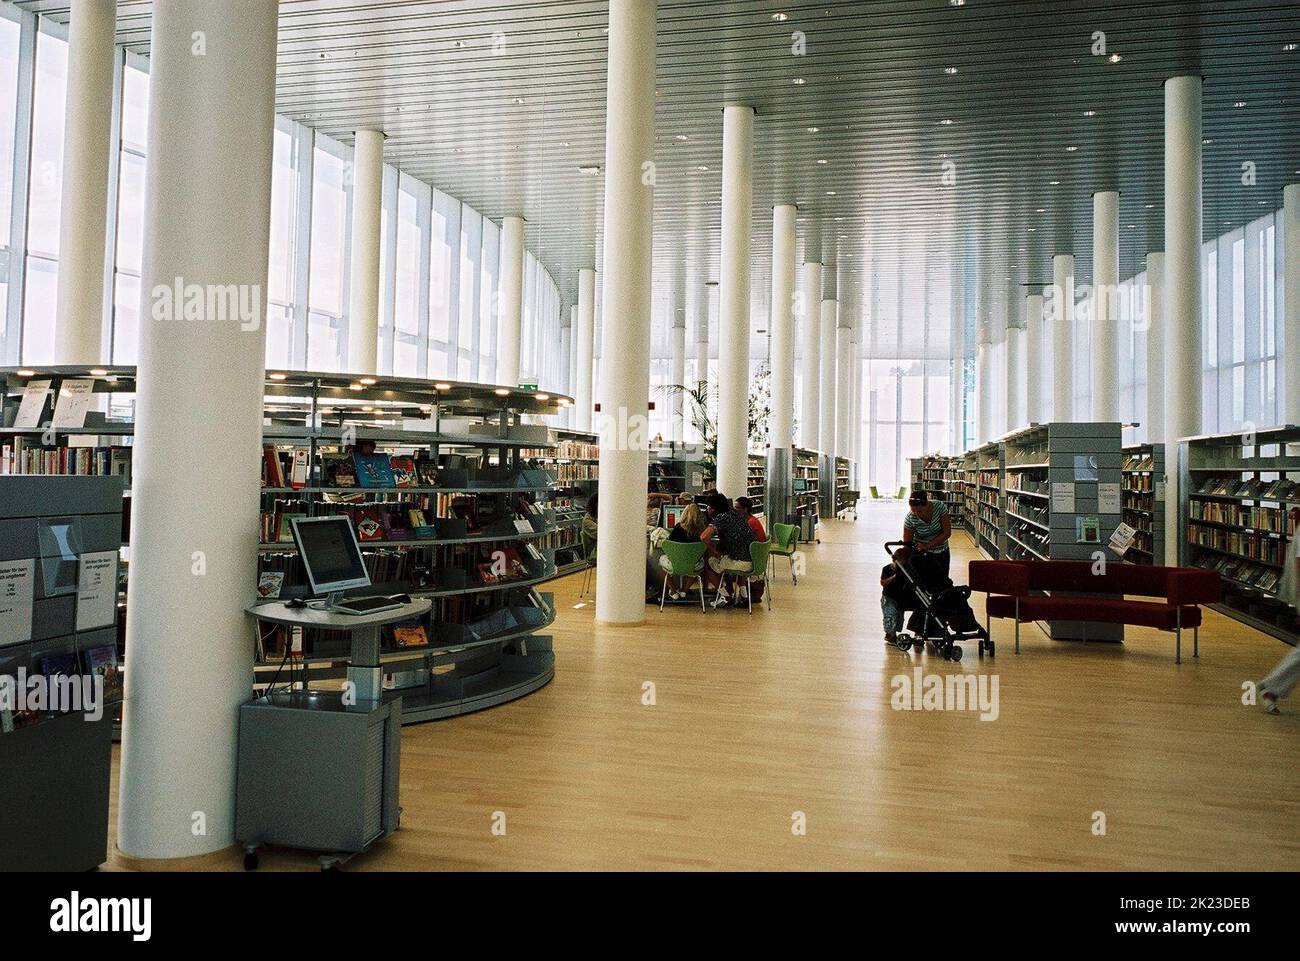 HALMSTAD Halland La biblioteca de la ciudad inauguró en abril de 2006 el interior de la sala principal Foto de stock